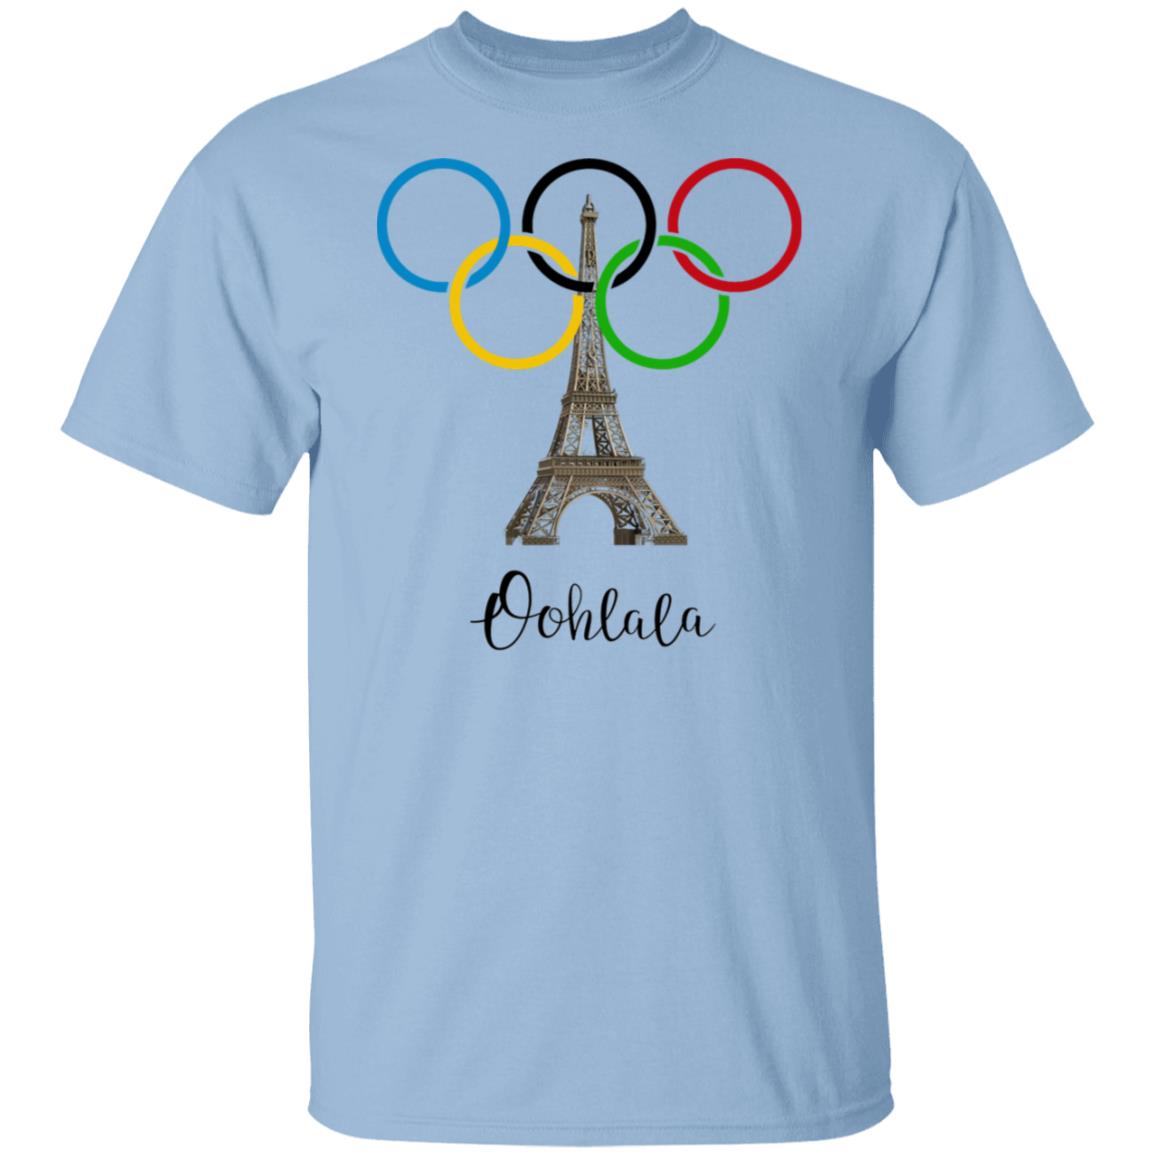 Ohh La La Paris - Olympics T-Shirt